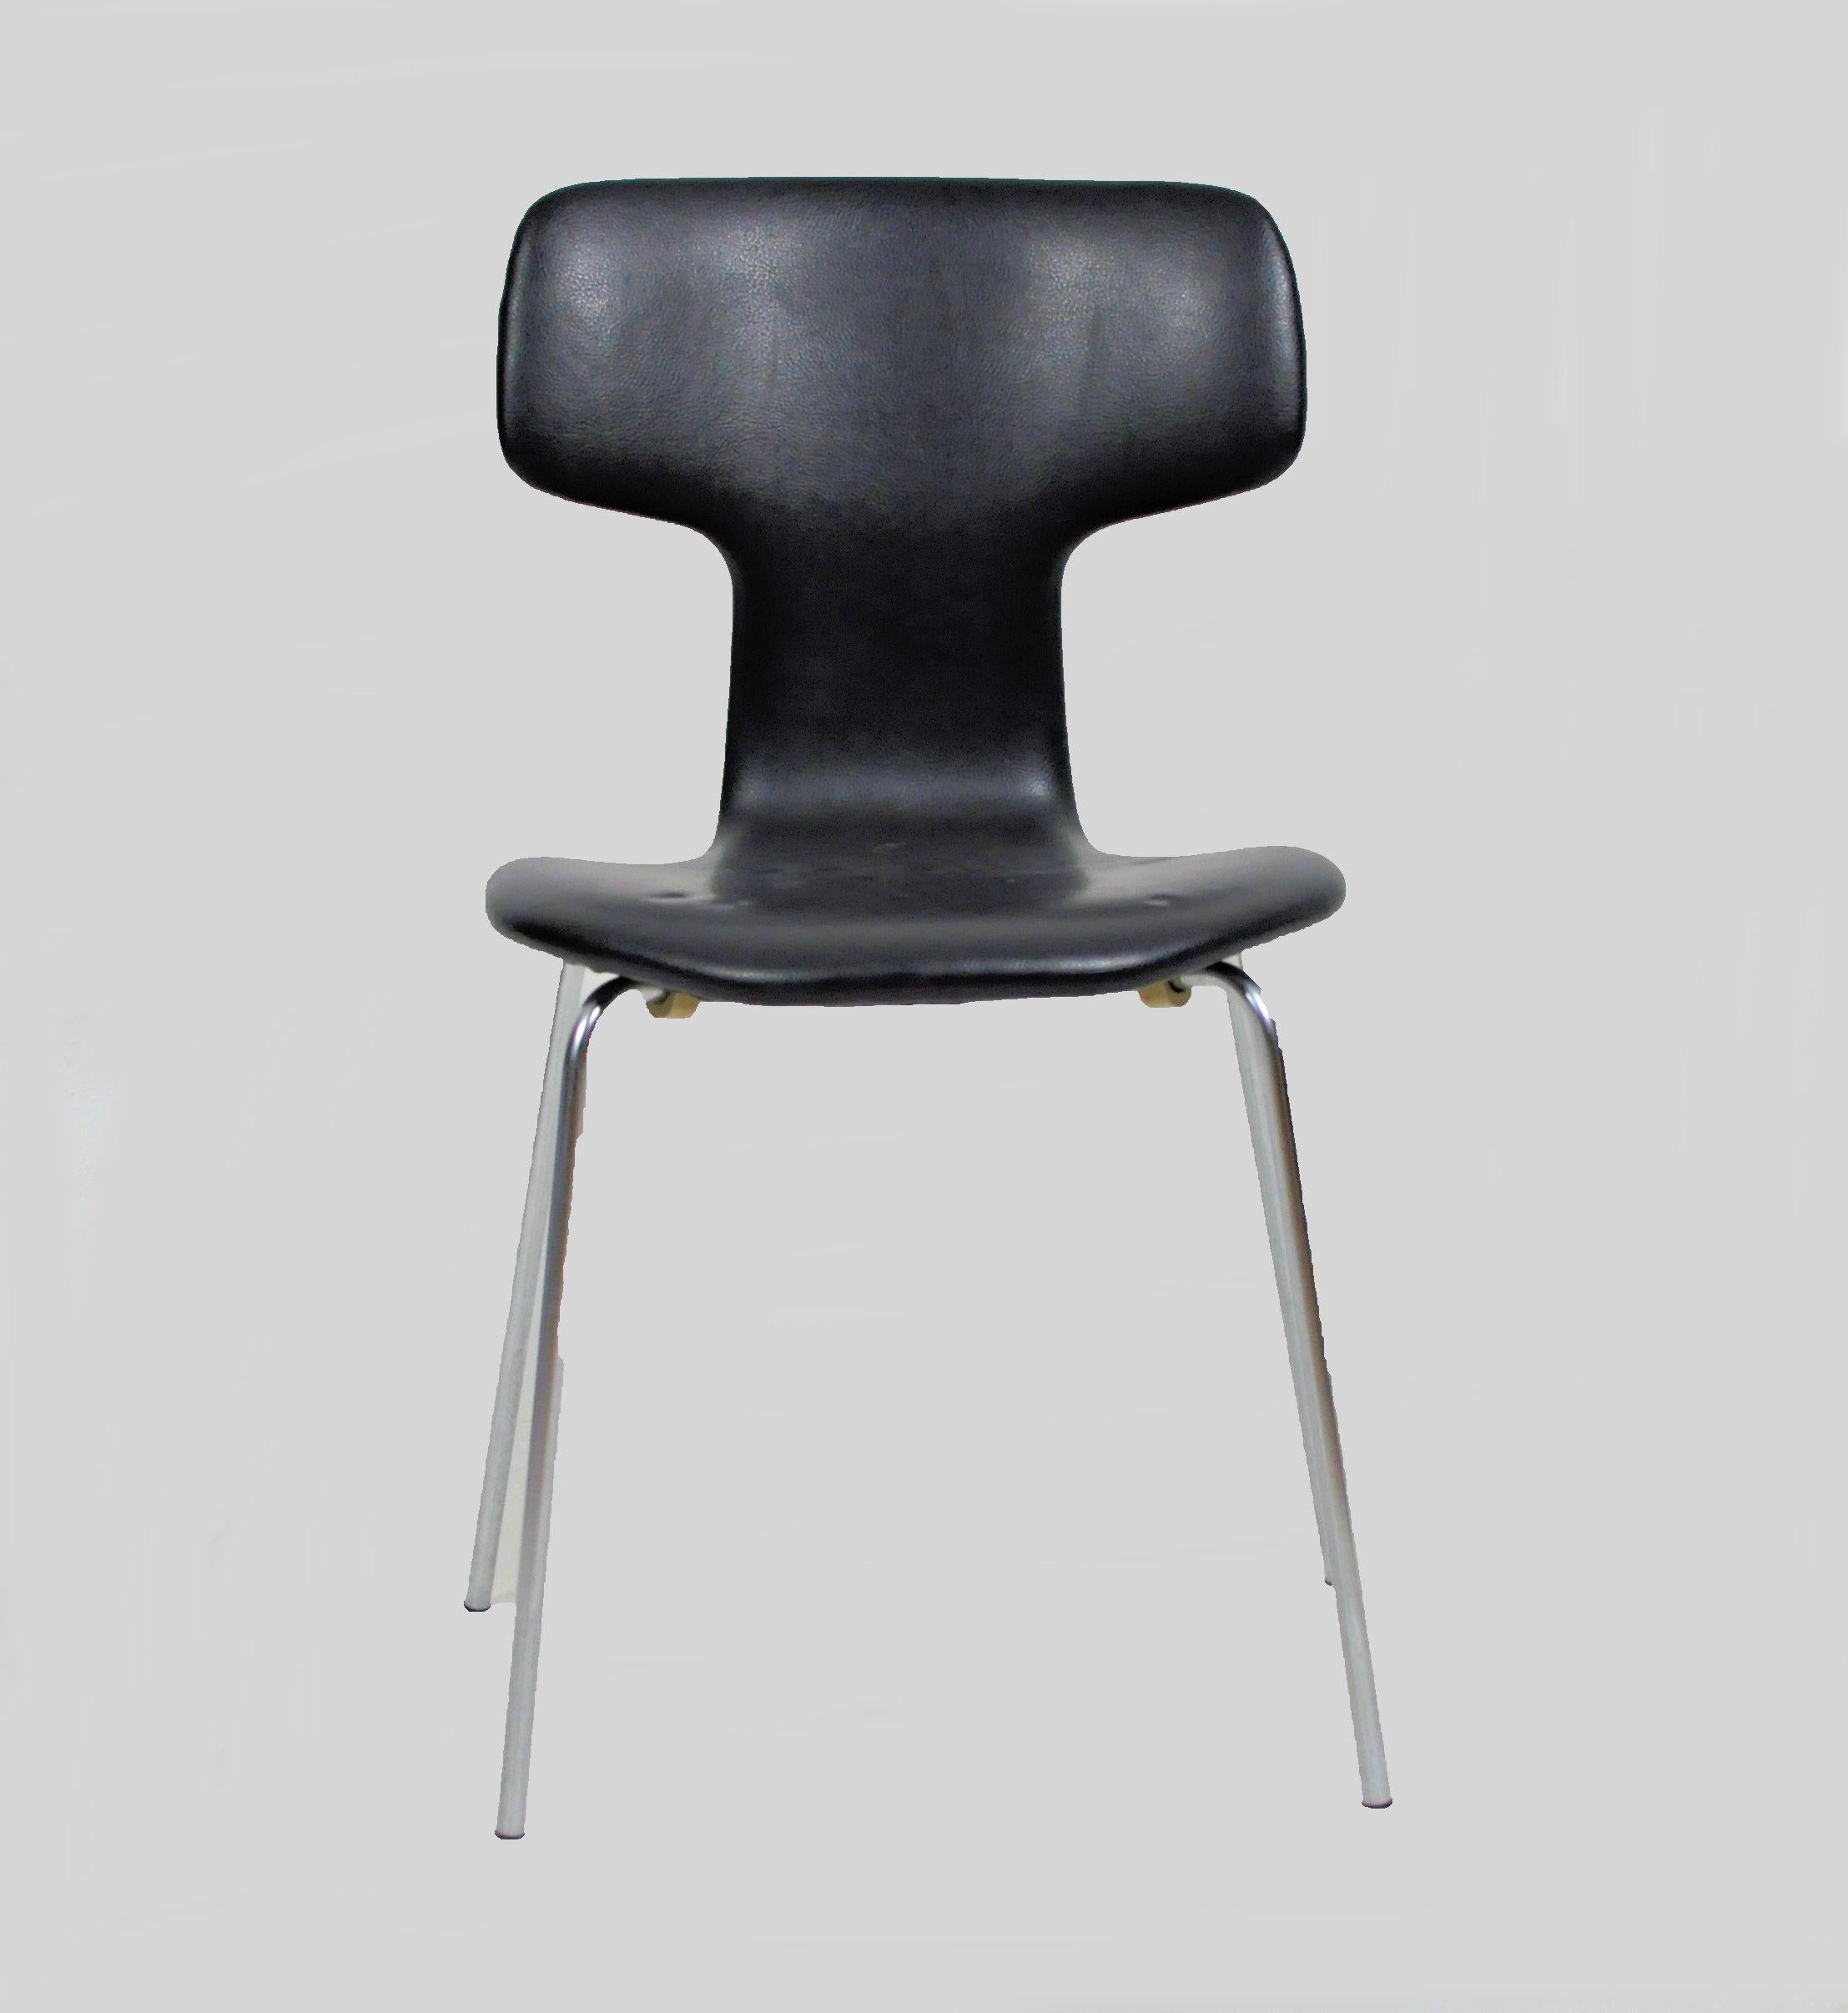 Ensemble de huit chaises danoises vintage, Arne Jacobsen modèle 3103 appelées 